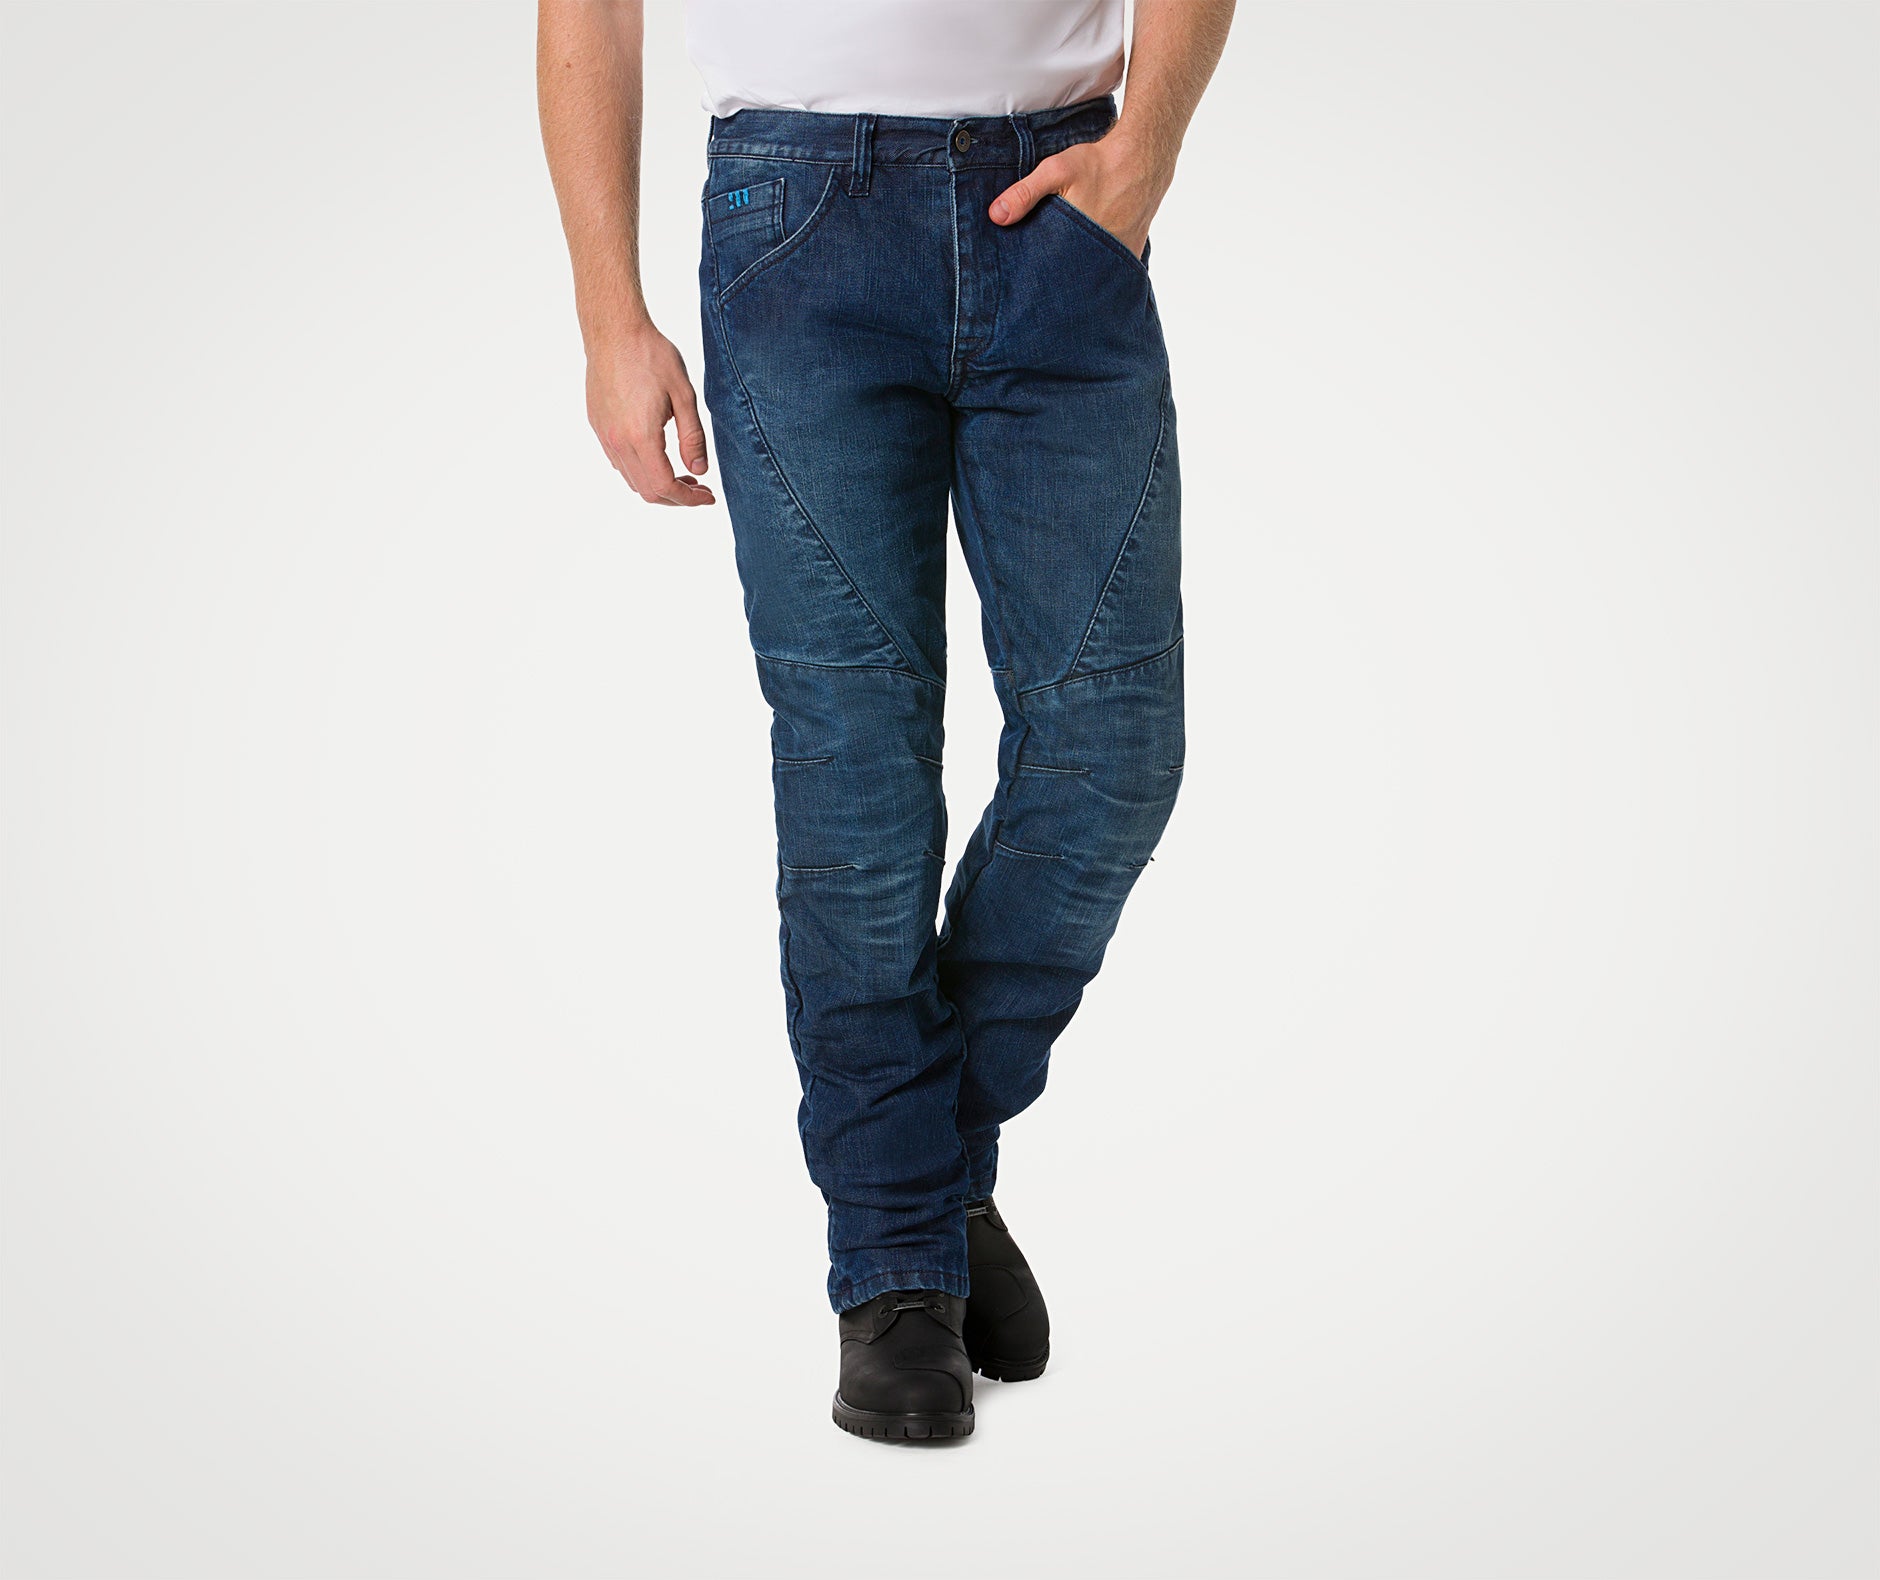 Pantaloni moto Uomo Jeans Denim Blu Protezioni Omologate in ITALIA